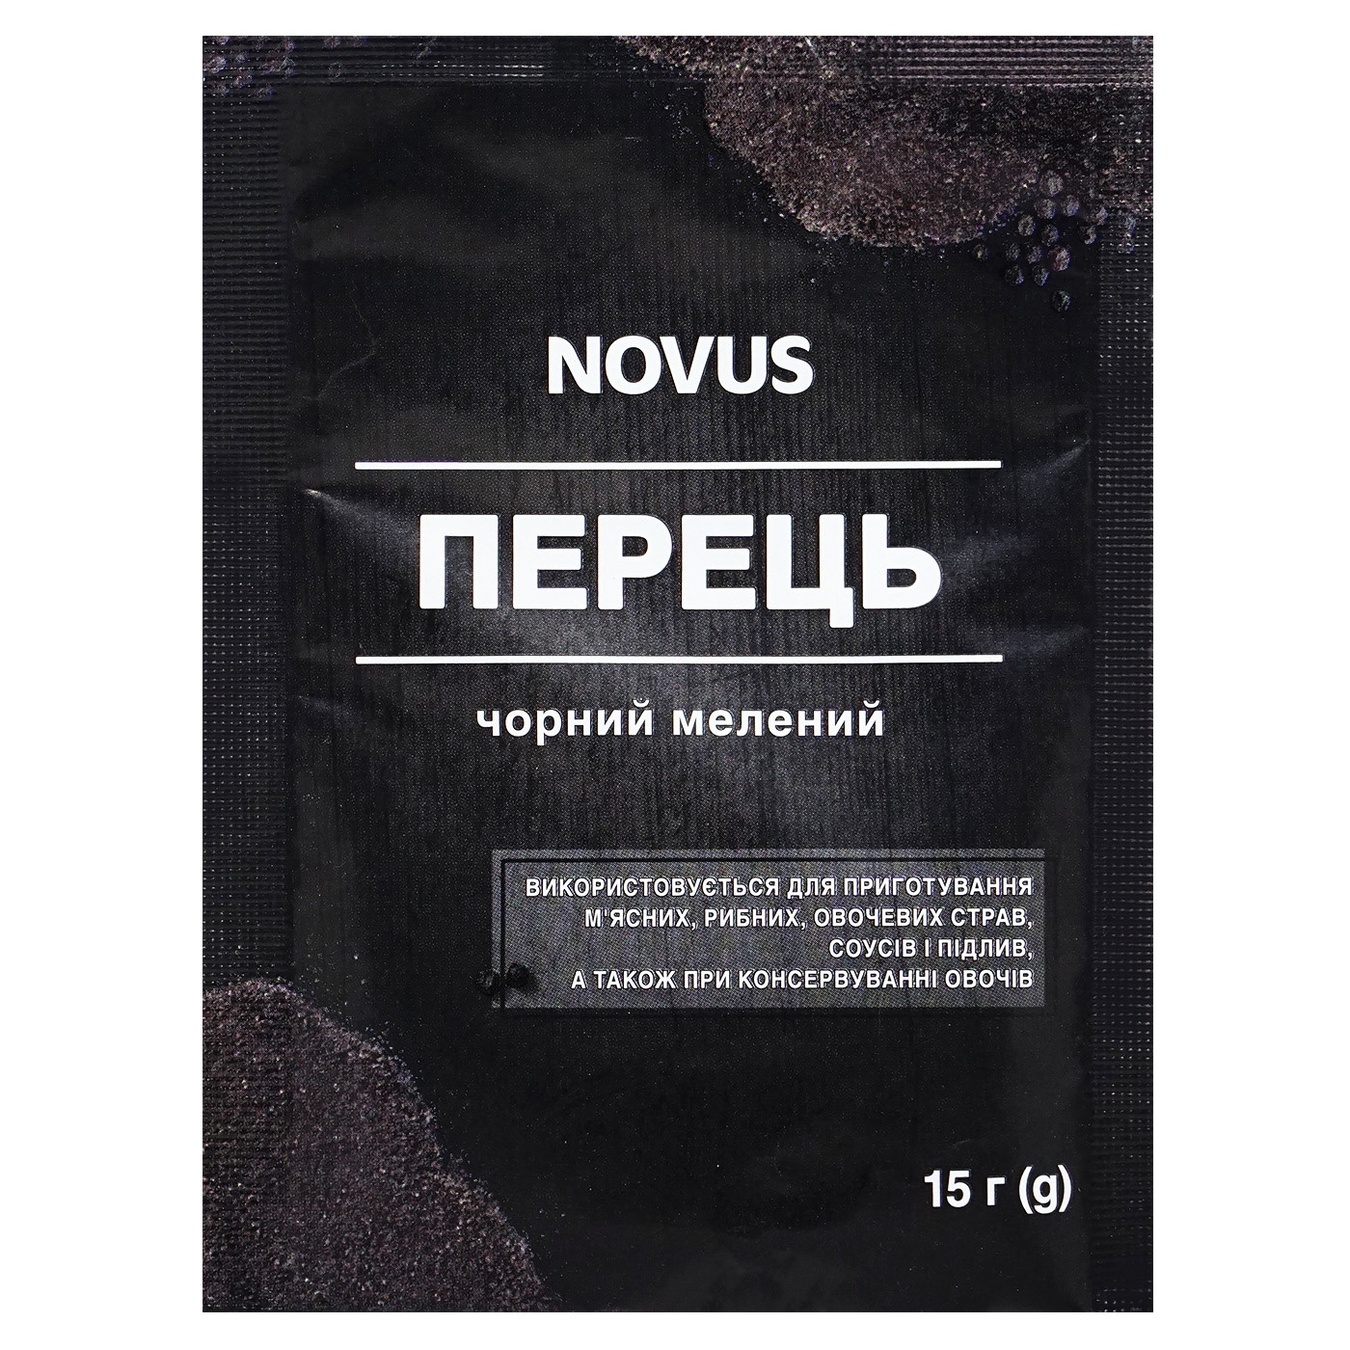 Перець Novus чорний мелений 15г